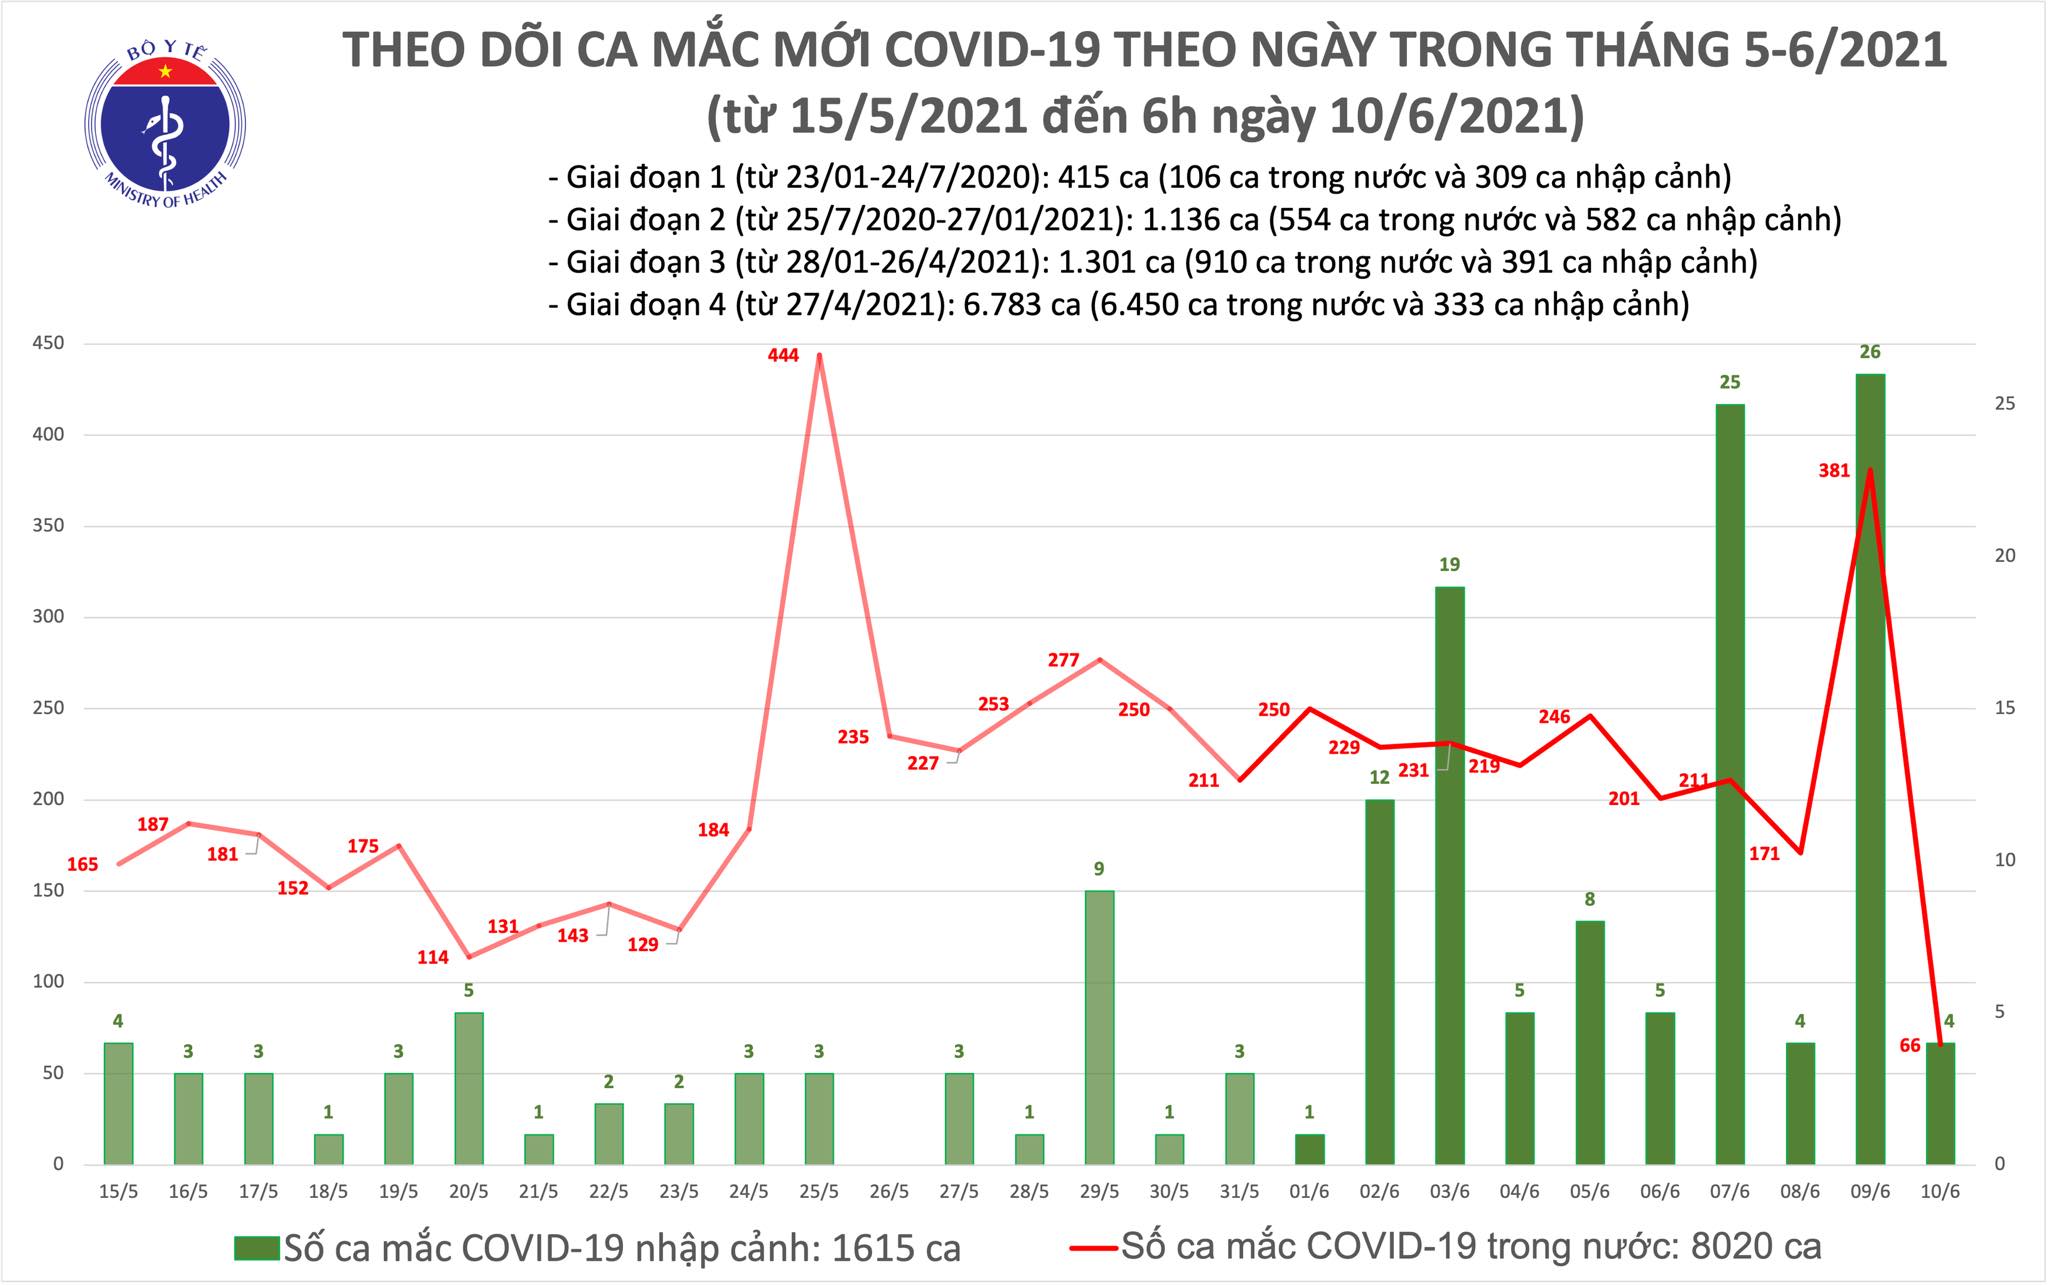 Sáng 10/6, có 70 ca mắc COVID-19, TPHCM nhiều nhất với 26 trường hợp